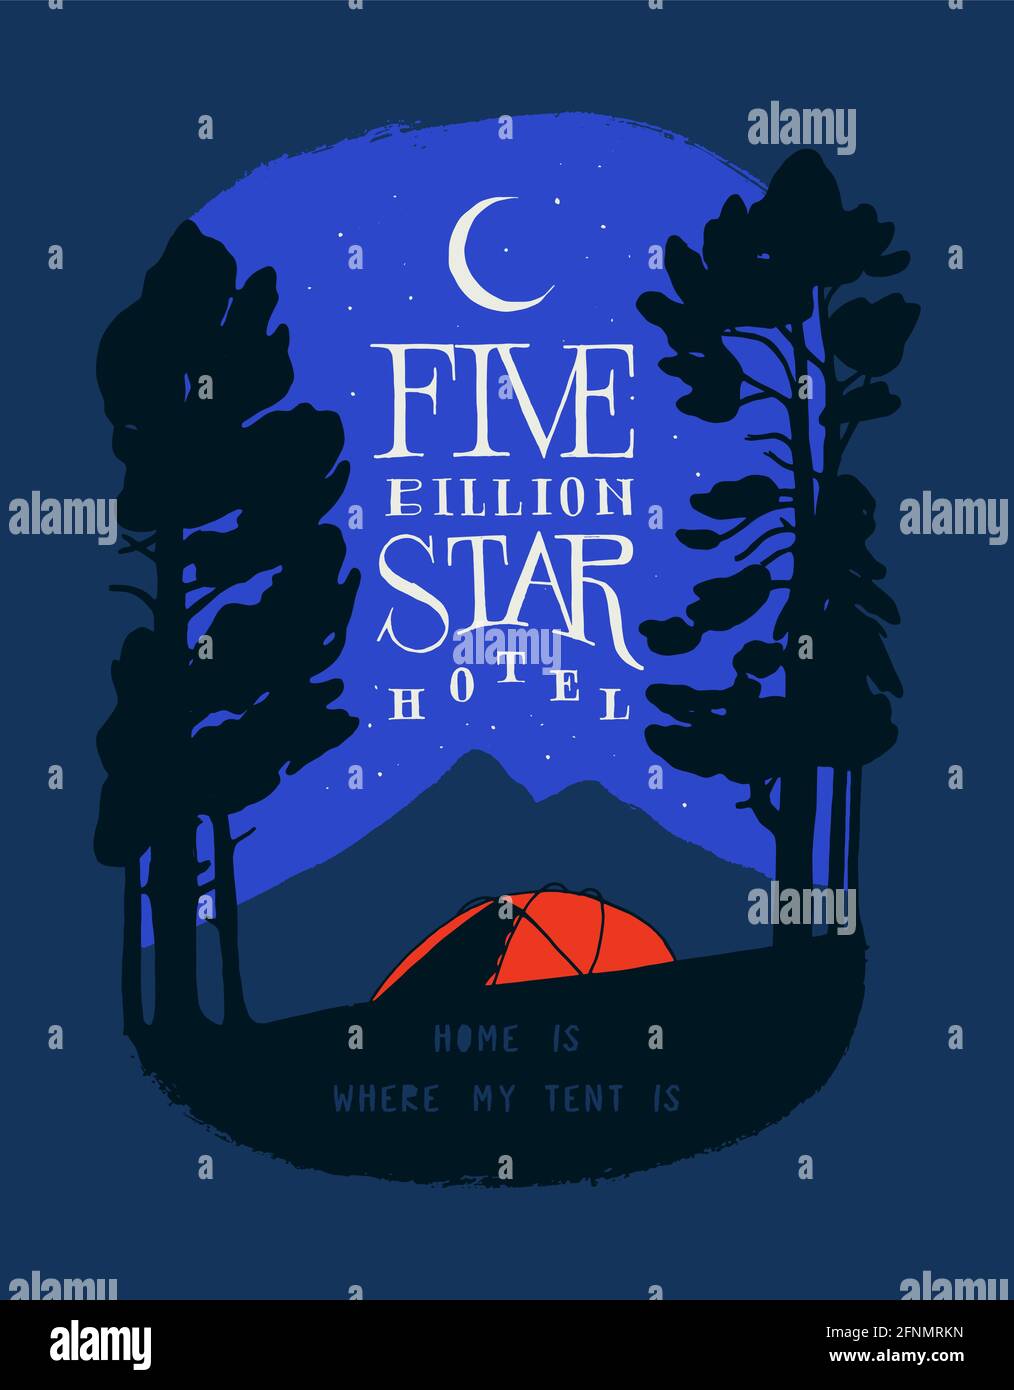 Hôtel cinq milliards d'étoiles - tente rouge dans la forêt en face du pic de la montagne la nuit sous le stars - imprimé t-shirt avec lettres de motivation pour les voyages Illustration de Vecteur